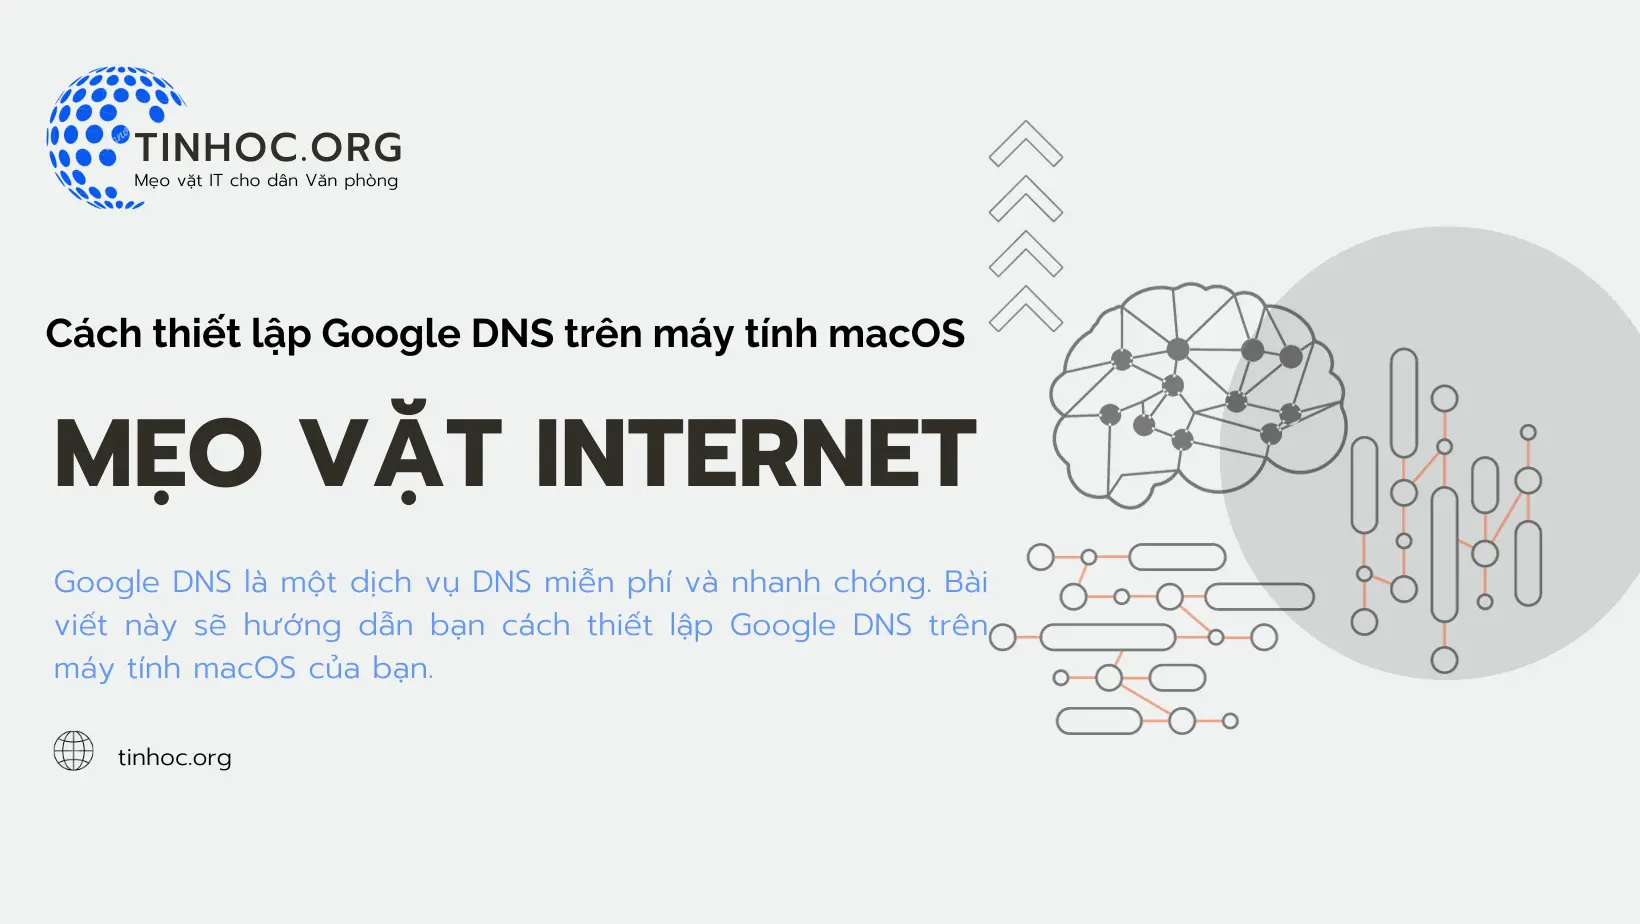 Google DNS là một dịch vụ DNS miễn phí và nhanh chóng. Bài viết này sẽ hướng dẫn bạn cách thiết lập Google DNS trên máy tính macOS của bạn.